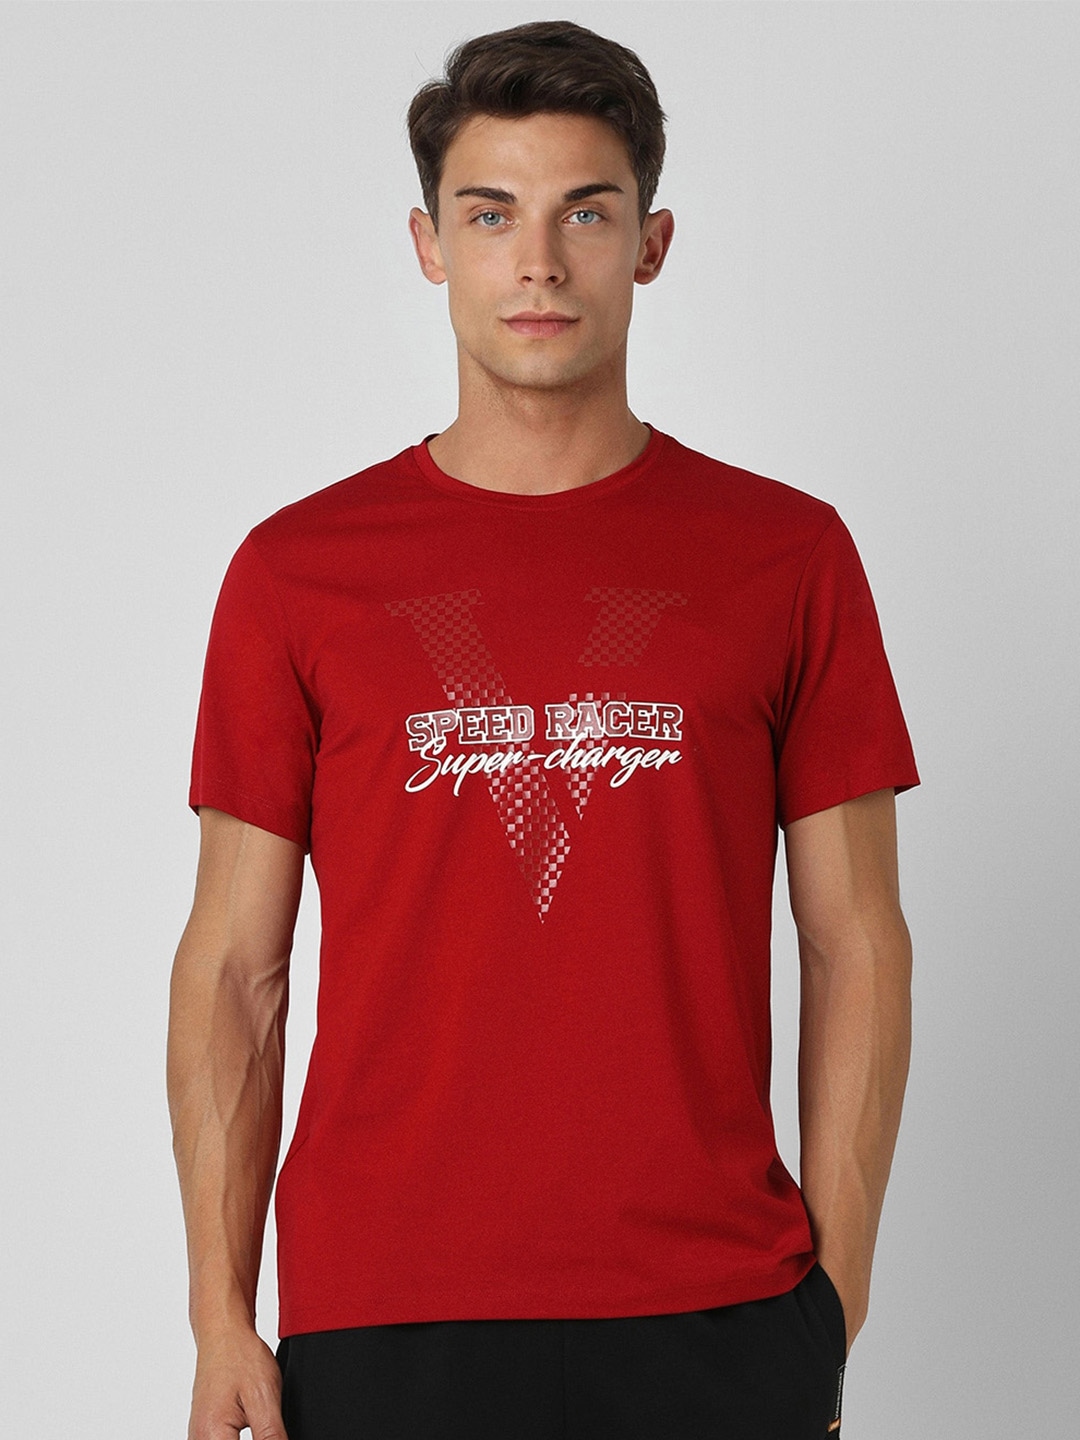 

Van Heusen Flex Men Typography Printed Applique Slim Fit T-shirt, Red